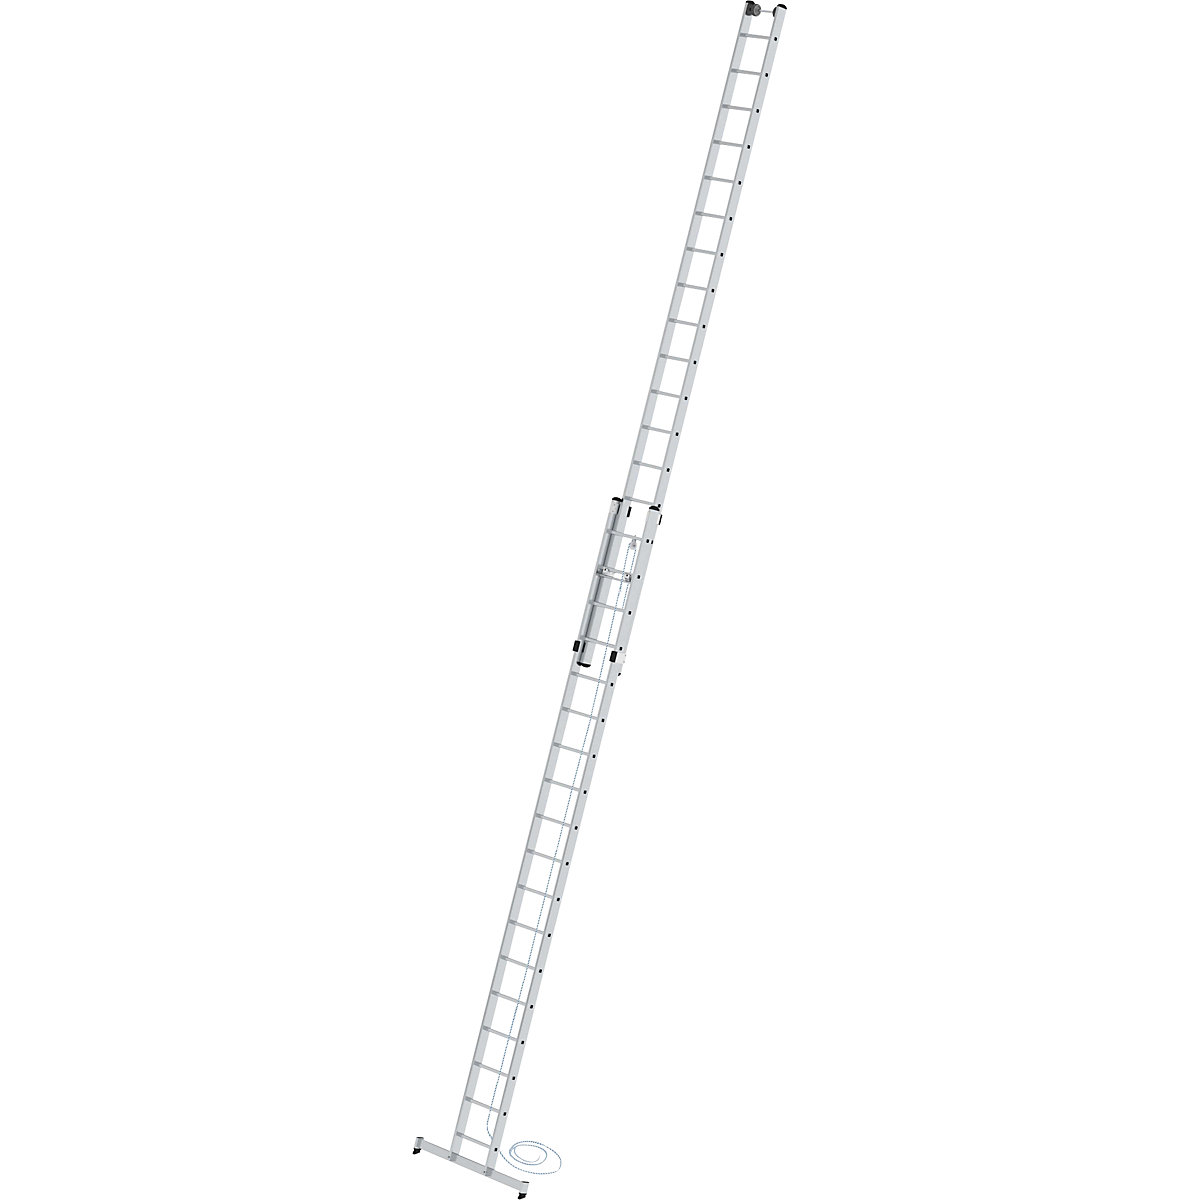 Výškově přestavitelný opěrný žebřík – MUNK, žebřík s lankem, 2dílný s příčníkem nivello®, 2 x 18 příčlí